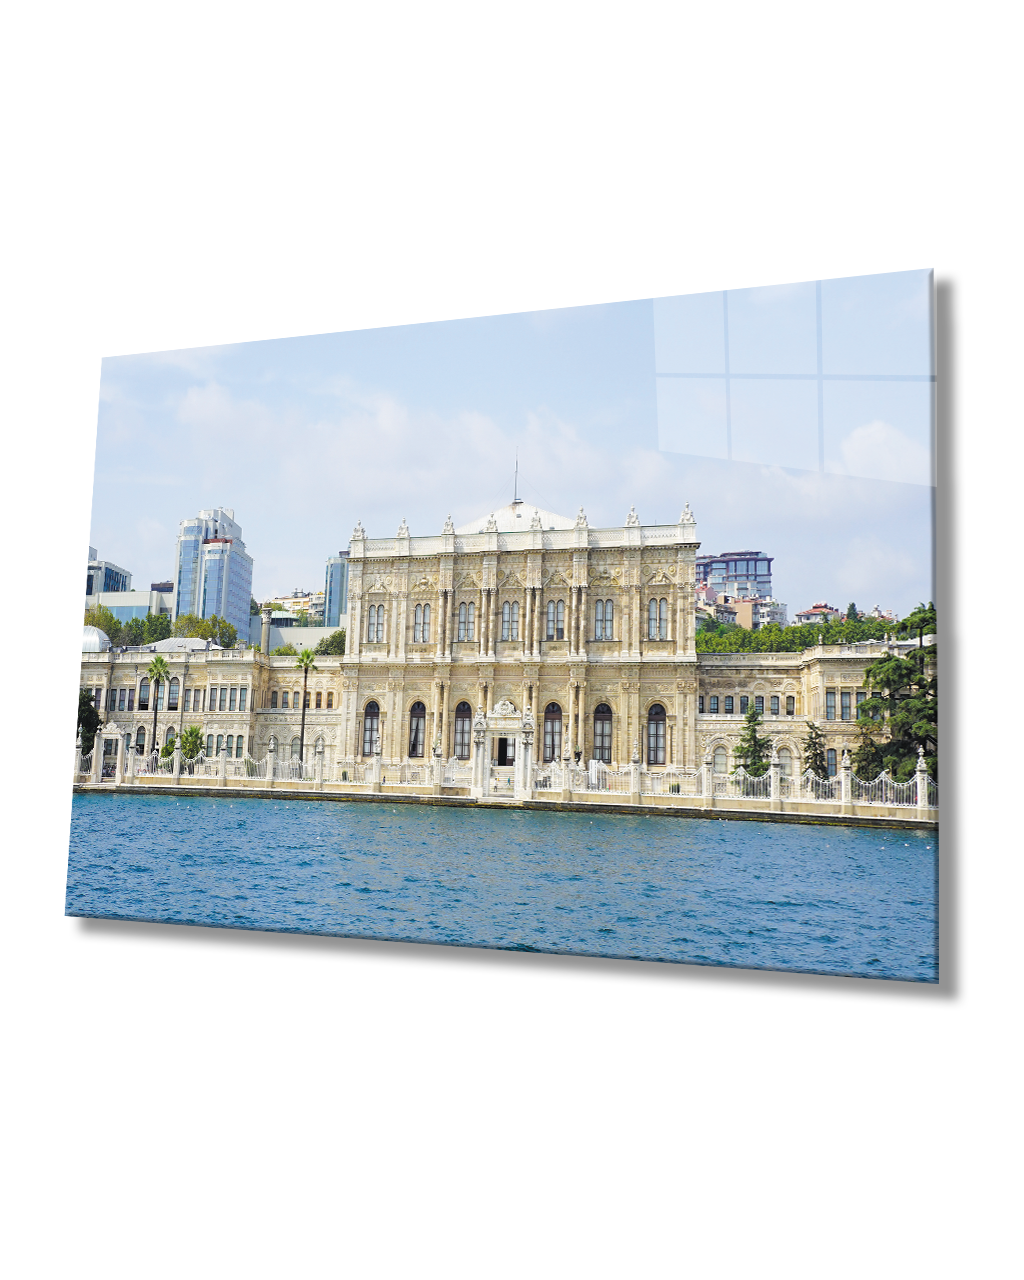 İstanbul Dolma Bahçe Sarayı Cam Tablo 4mm Dayanıklı Temperli Cam